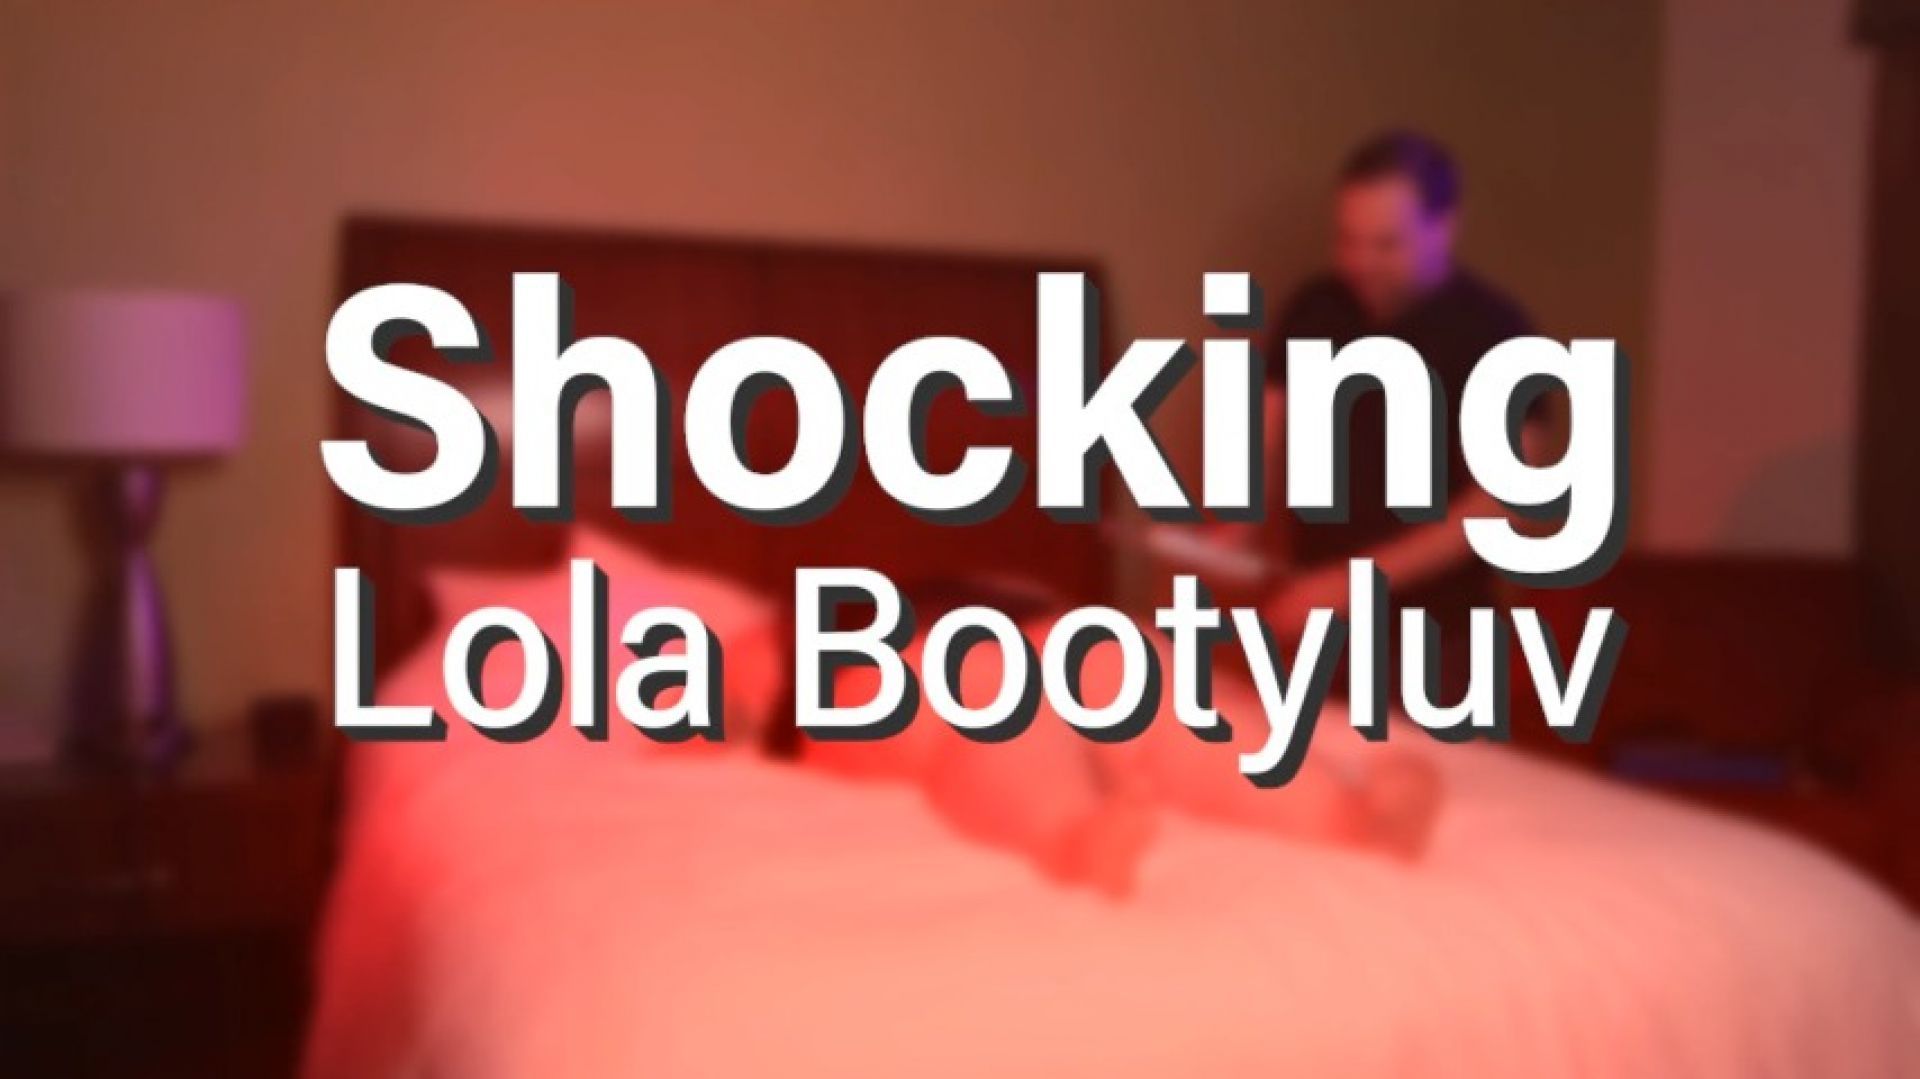 Shocking Lola BootyLuv: Electro-play Session